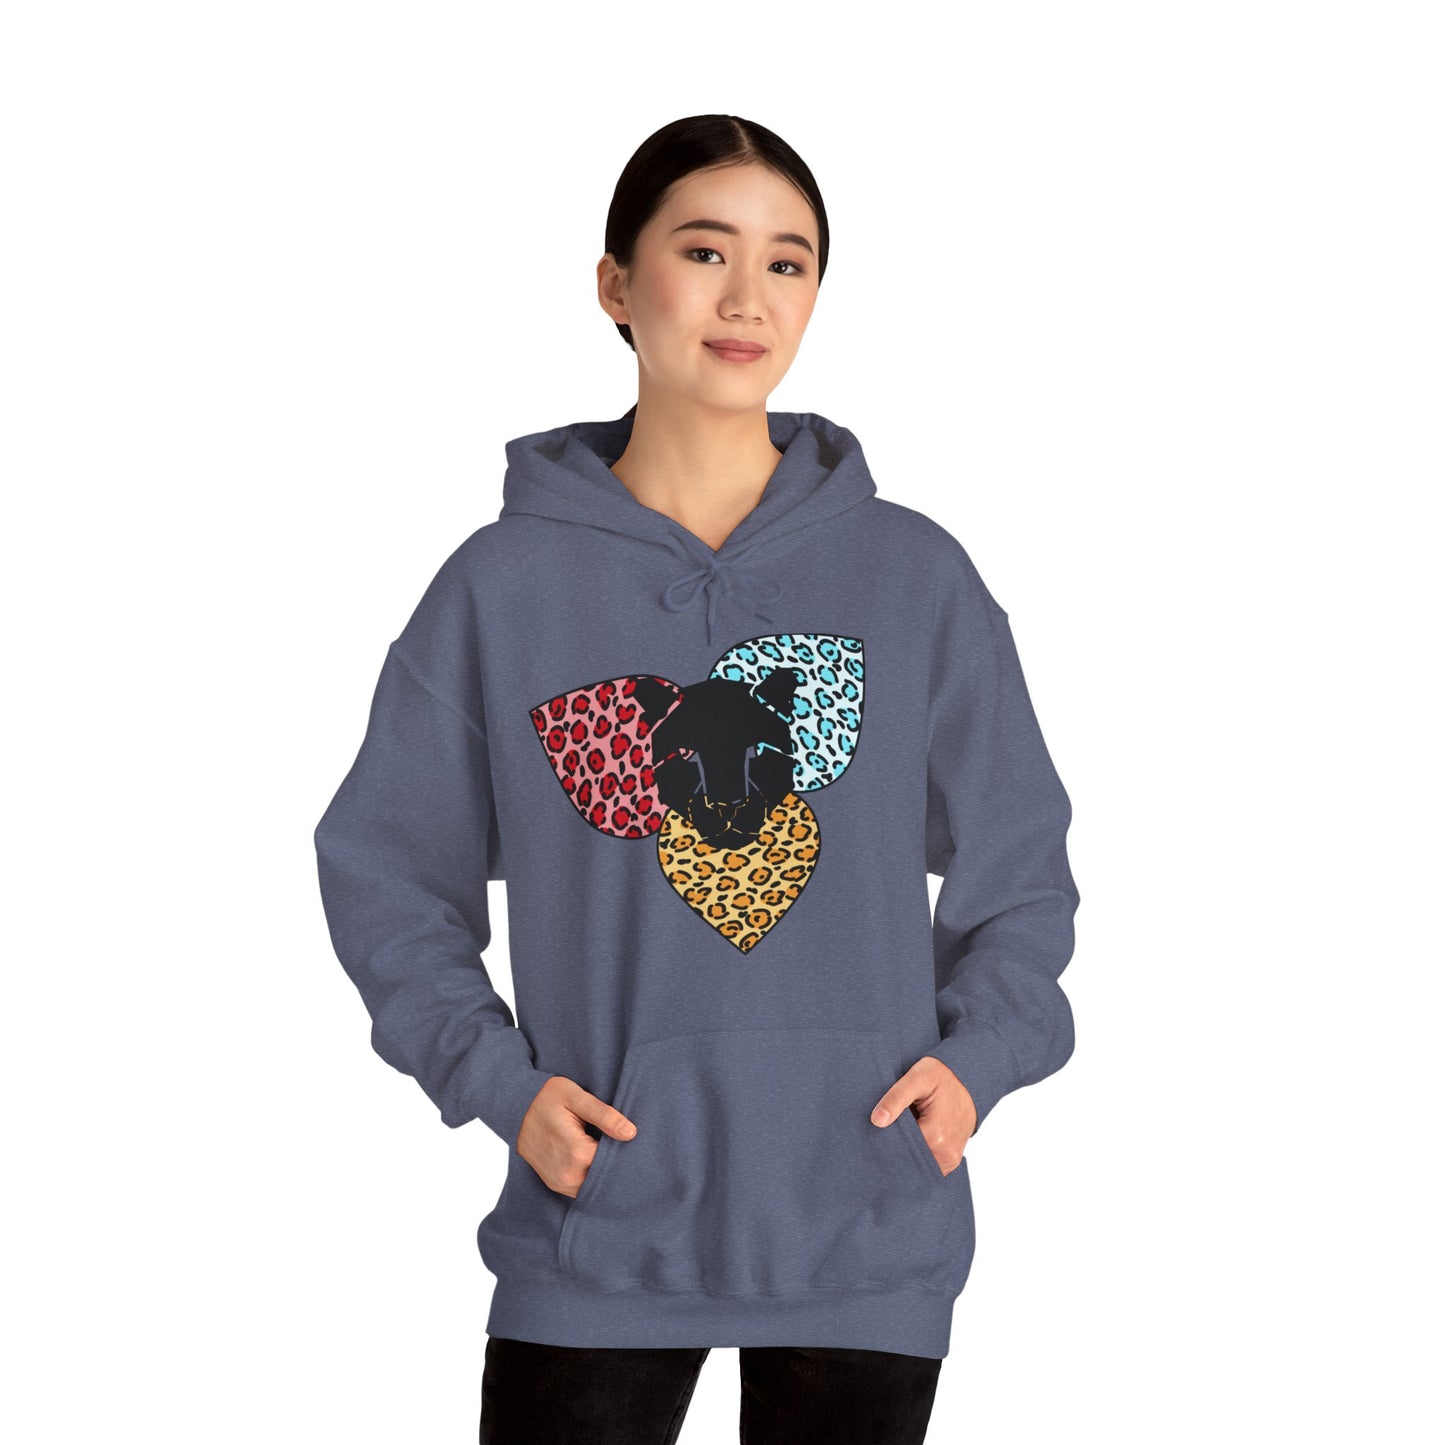 Leopard head on a leopard heart design Heavy Blend Hooded Sweatshirt